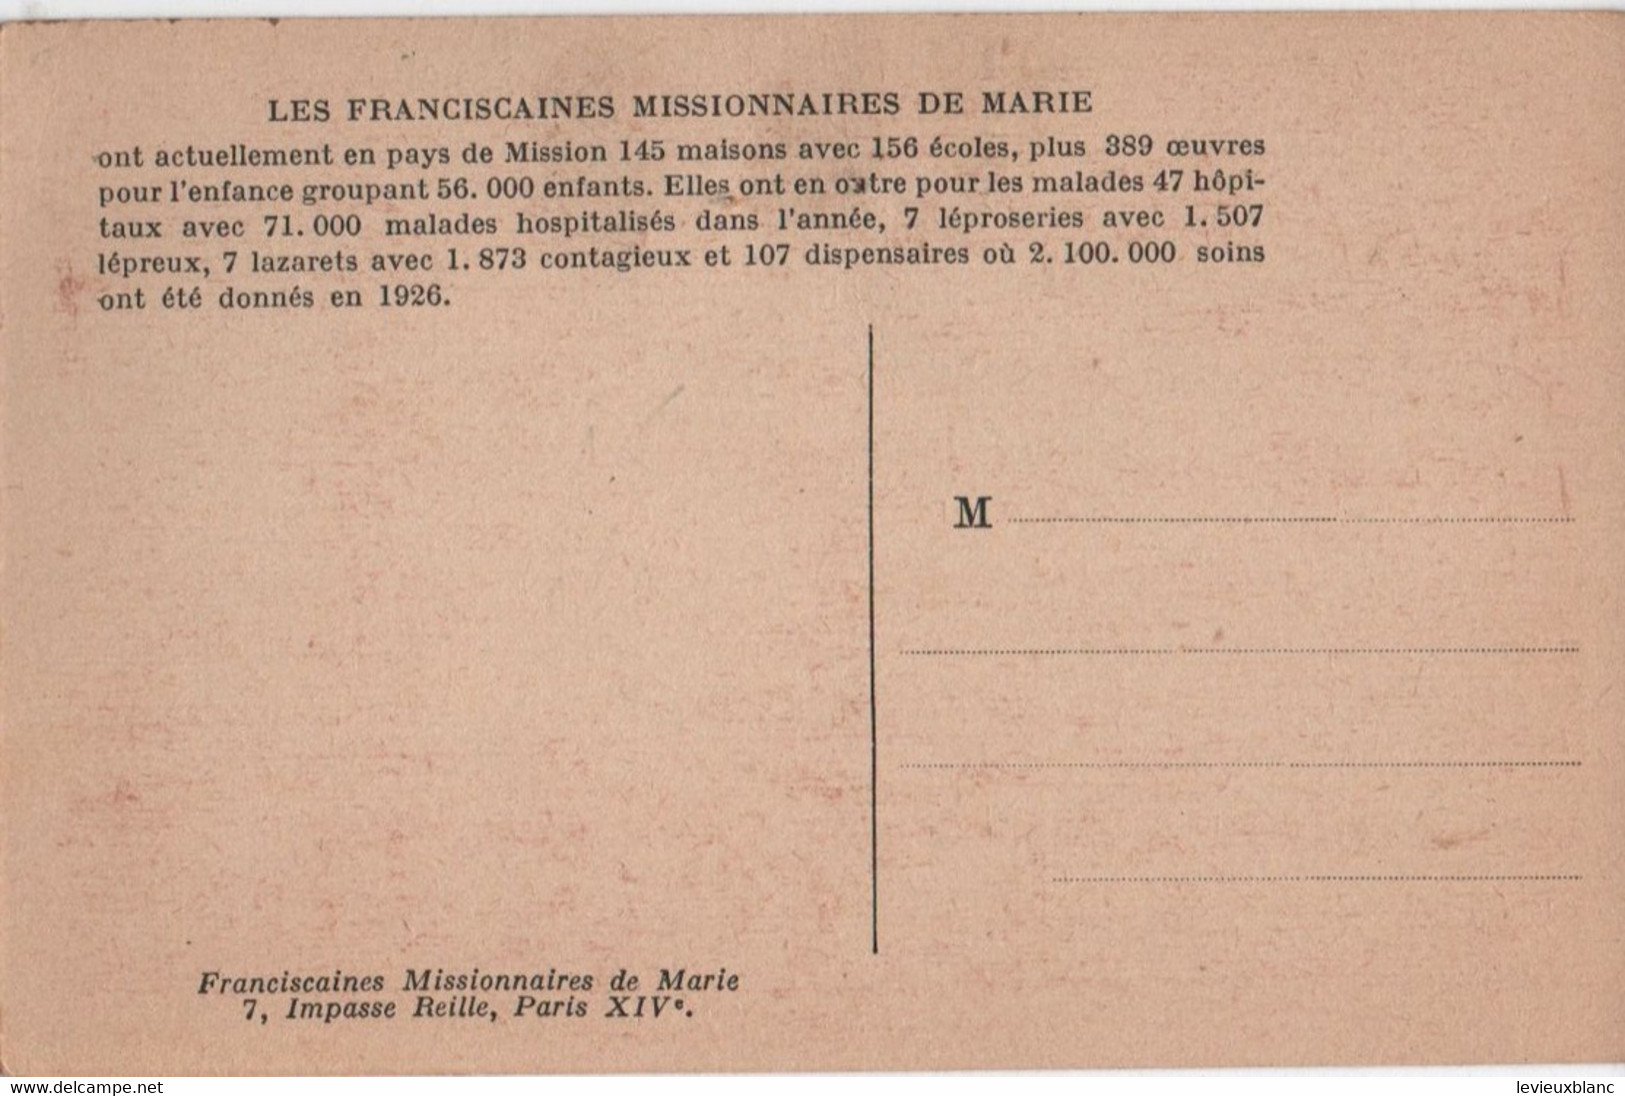 Carte Postale Ancienne/MAROC/Meknés/Franciscaines Missionnaires/Groupe De Fileuses Externes/Vers 1930-40      CPDIV346 - Meknes